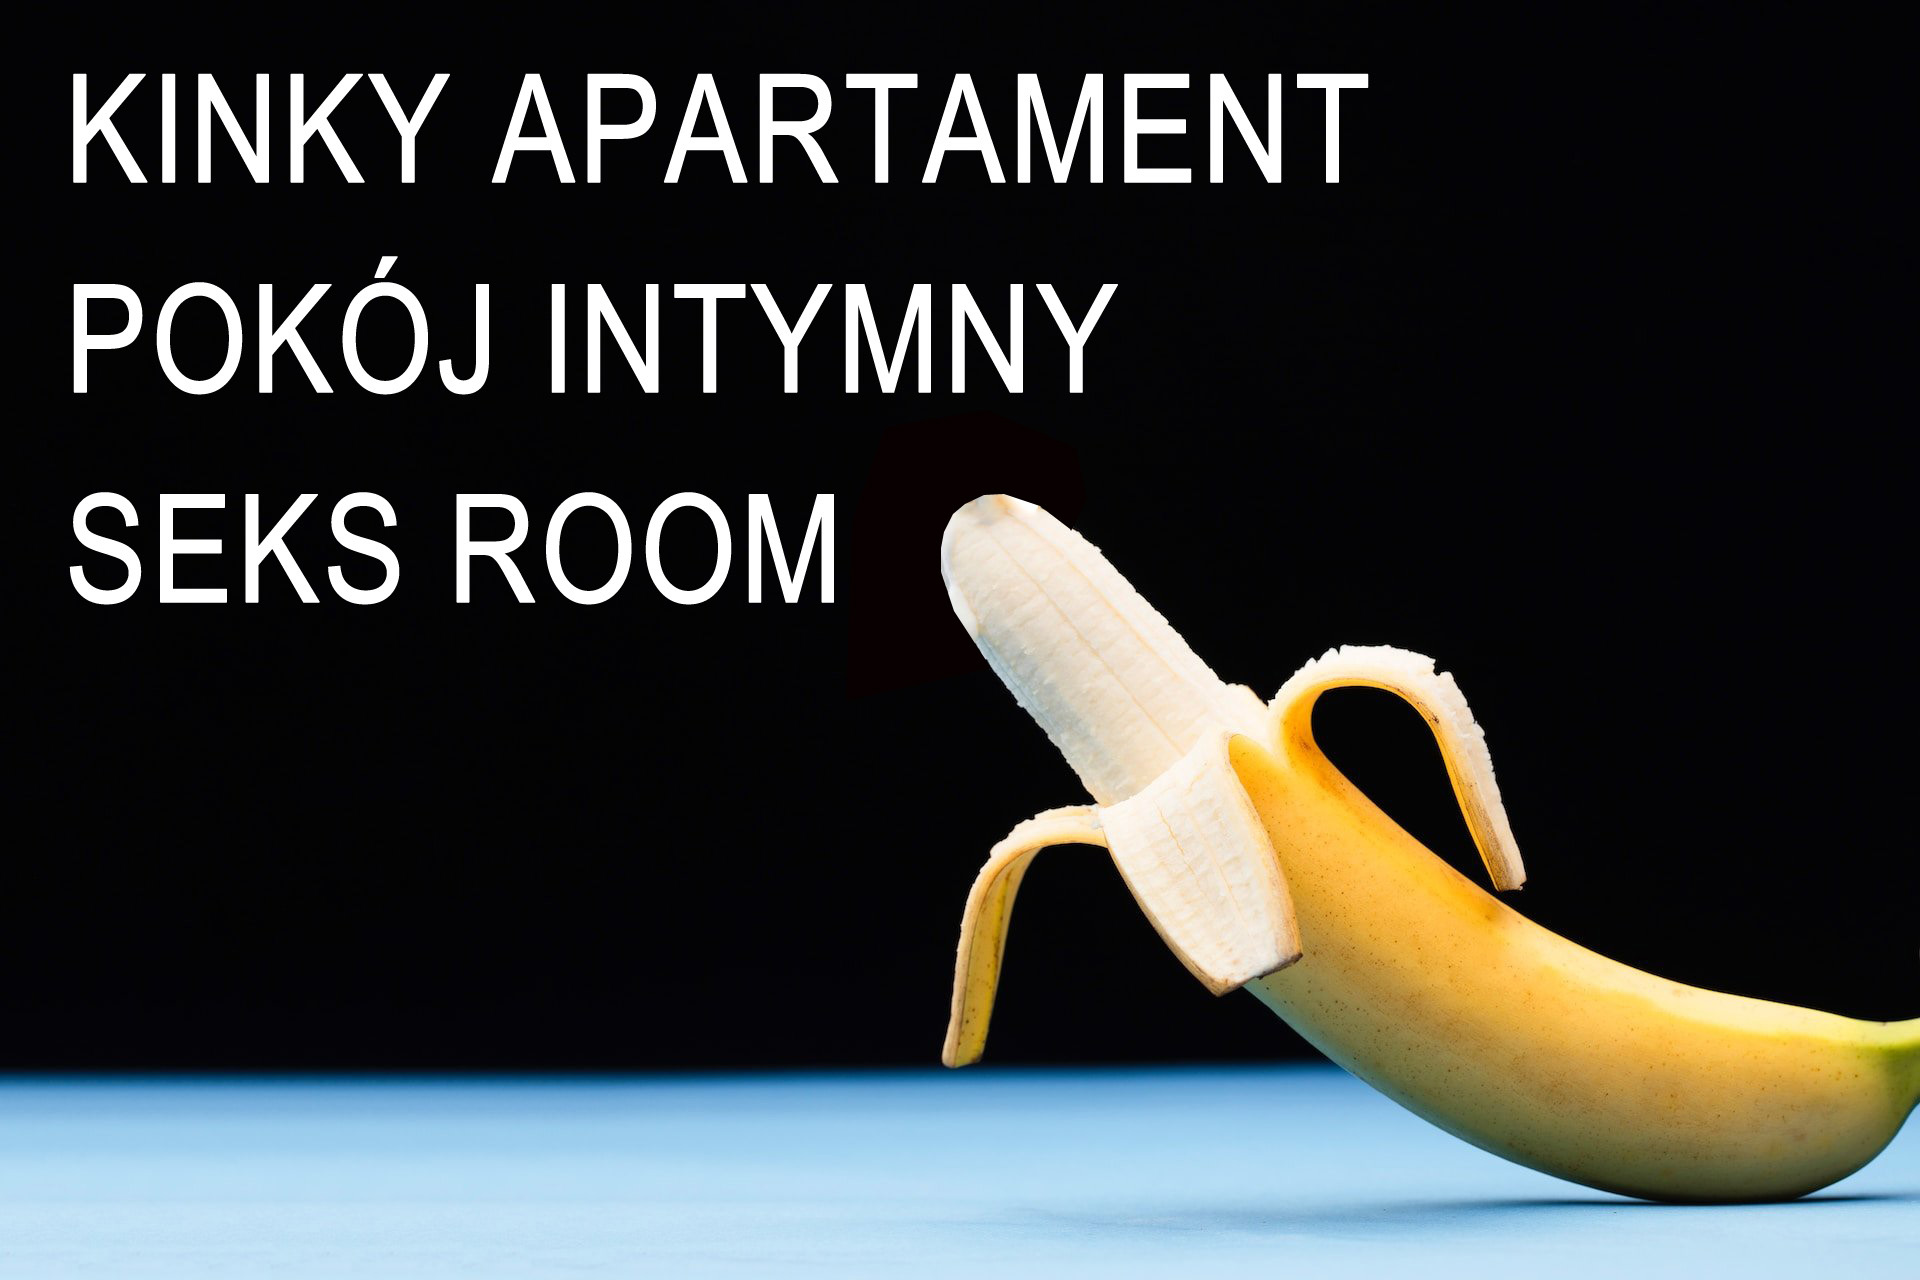 Pokój intymny Seks Room czy Apartament Kinky każdy z nich można ładnie zaprojektować